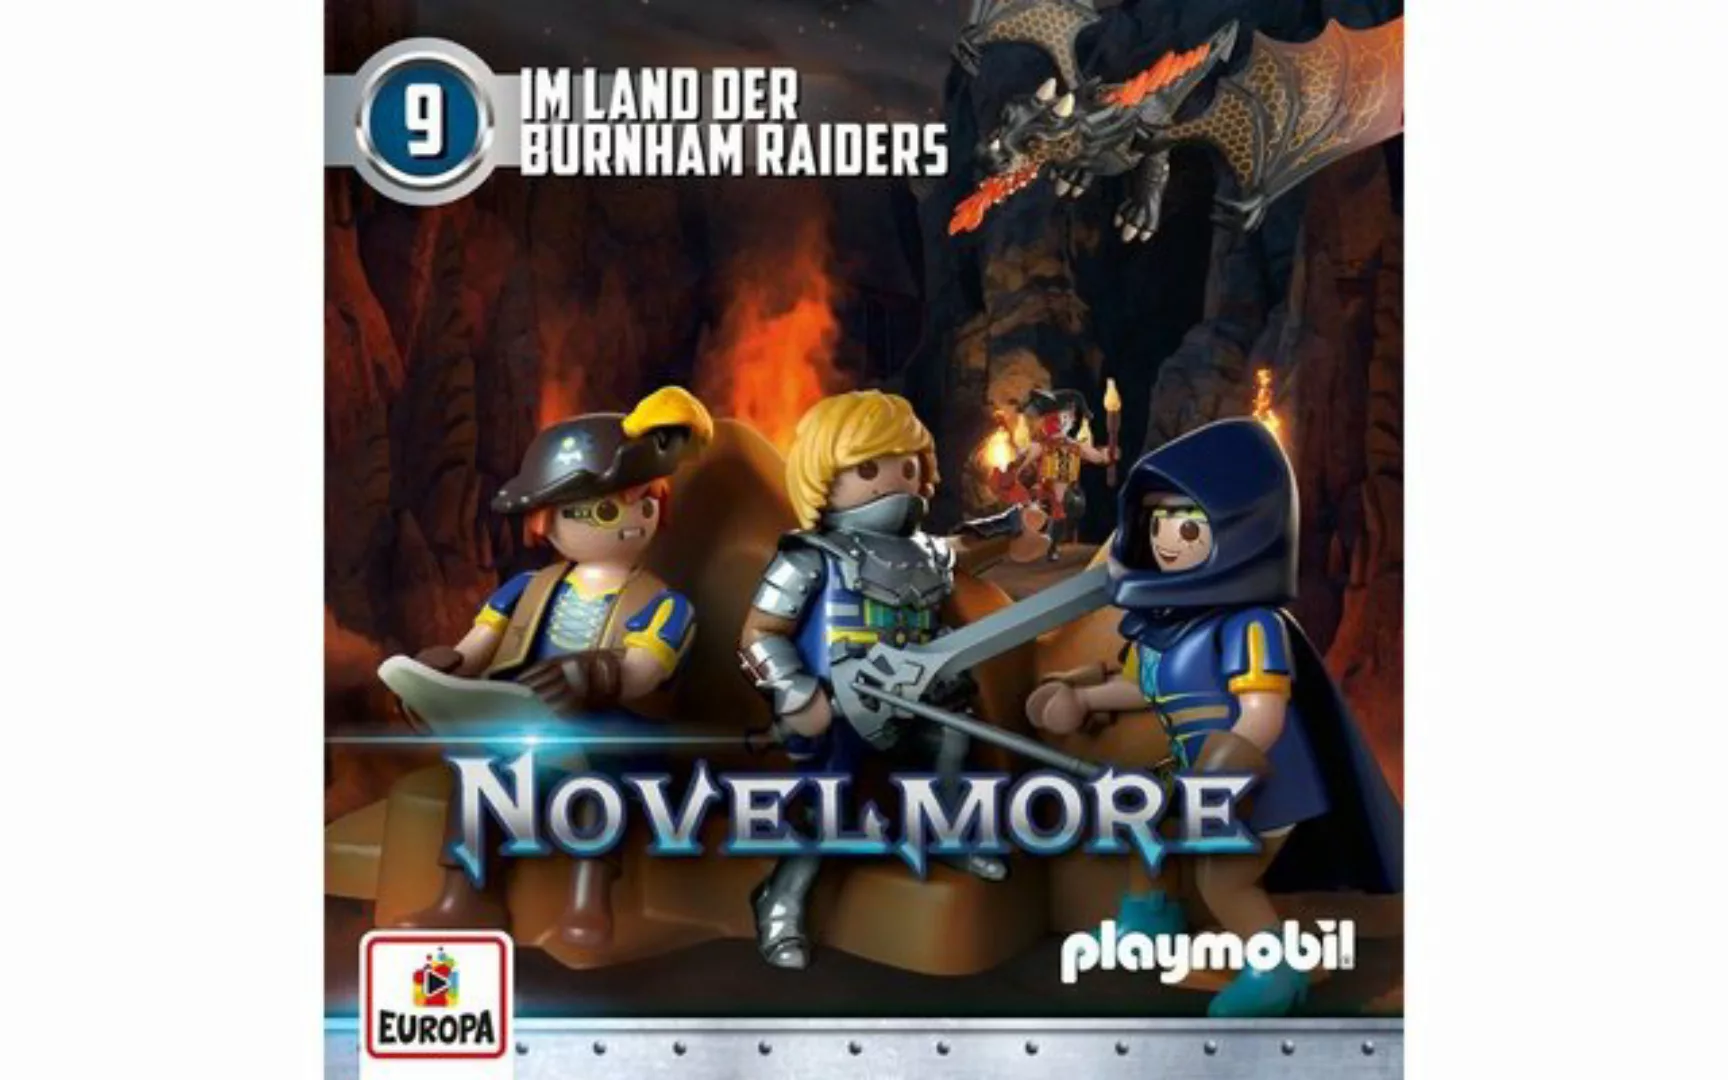 Europa Hörspiel-CD Playmobil Novelmore F.09 - Im Land der Burnham Raiders günstig online kaufen